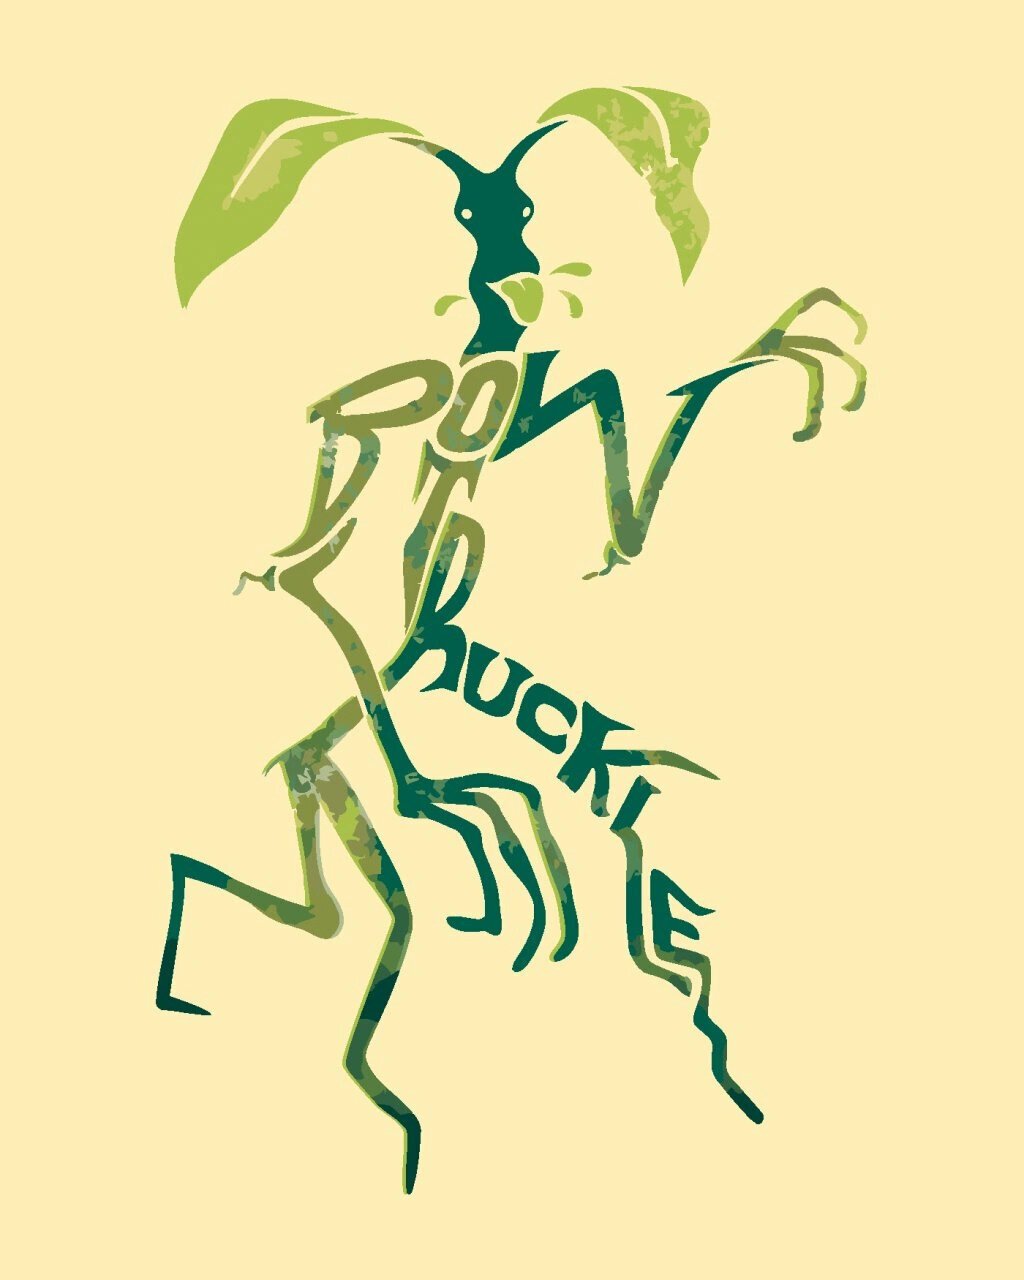 Festés számok szerint Zuty Festés számok szerint Illustrated Tree Ranger (Fantastic Beasts)